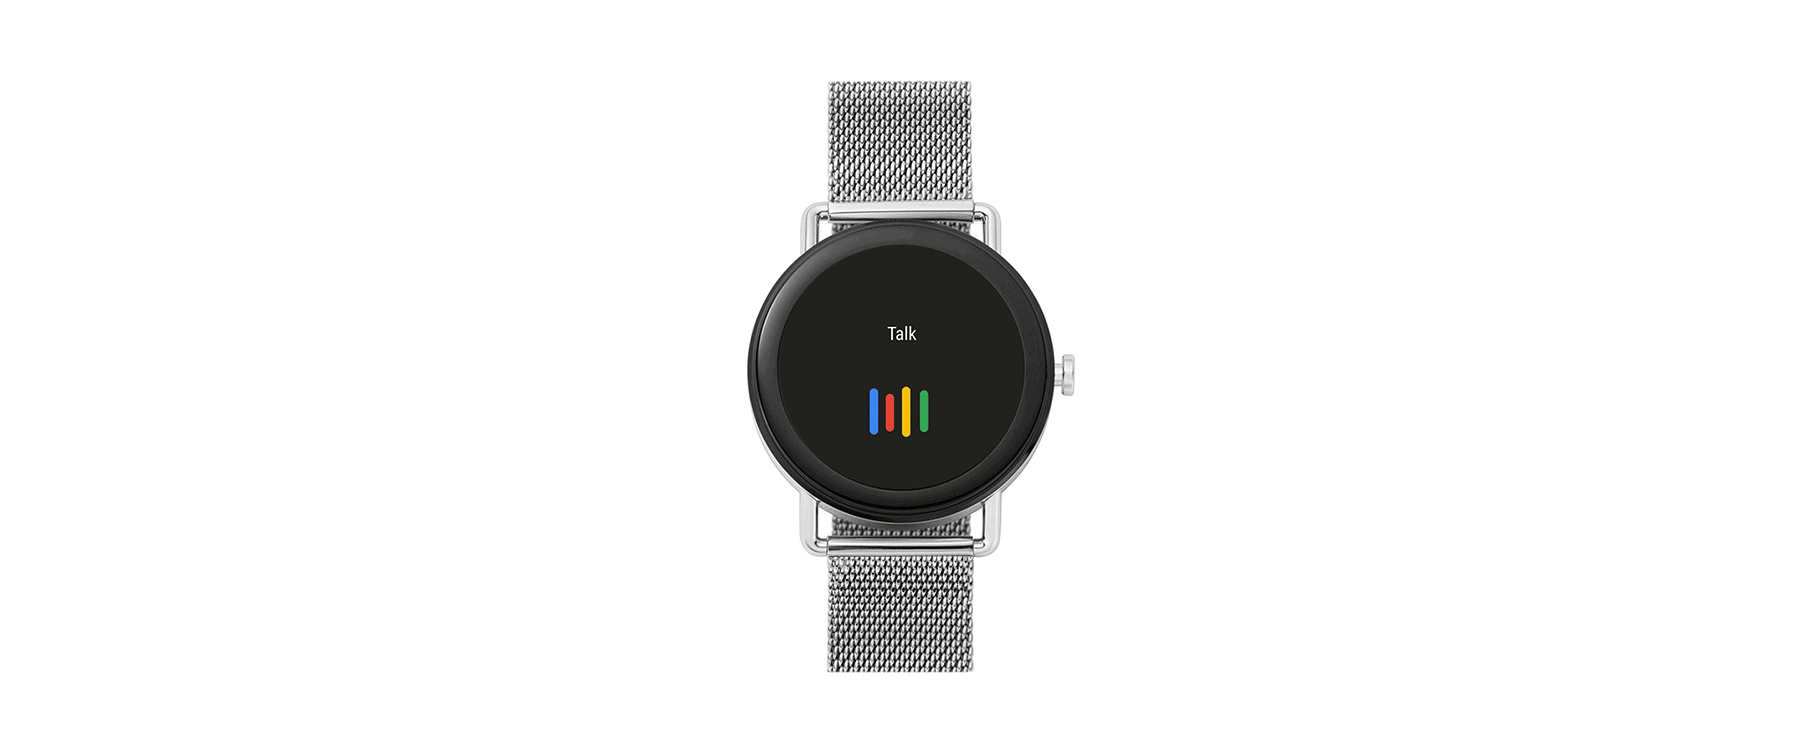 Il supporto all'esecuzione delle azioni sugli smartwatch con sistema operativo Wear OS by Google permette di impartire ordini all'intelligenza artificiale parlando all'orologio